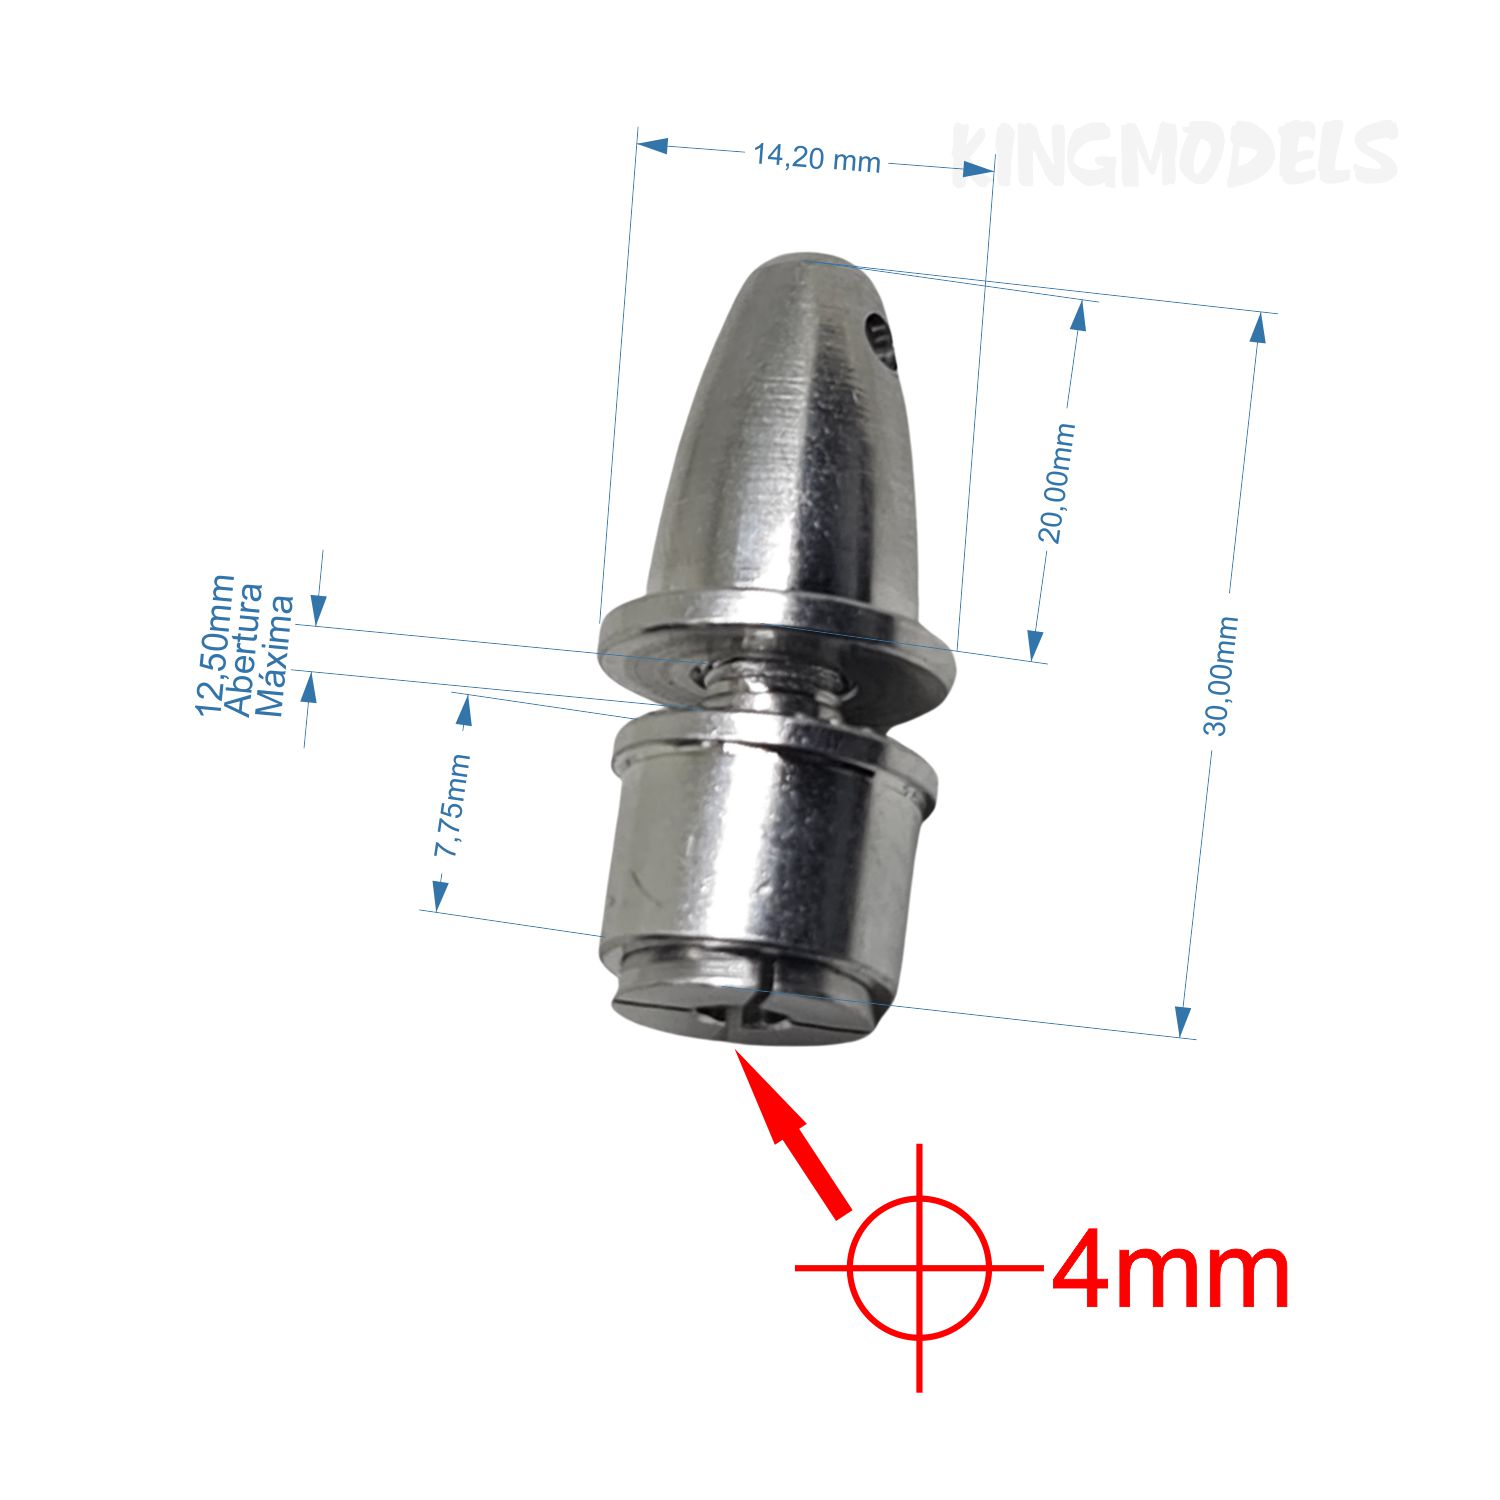 Spinner Alumínio P/ Motor Brushless C/ Eixo 4mm Mod. Mandril - King Models